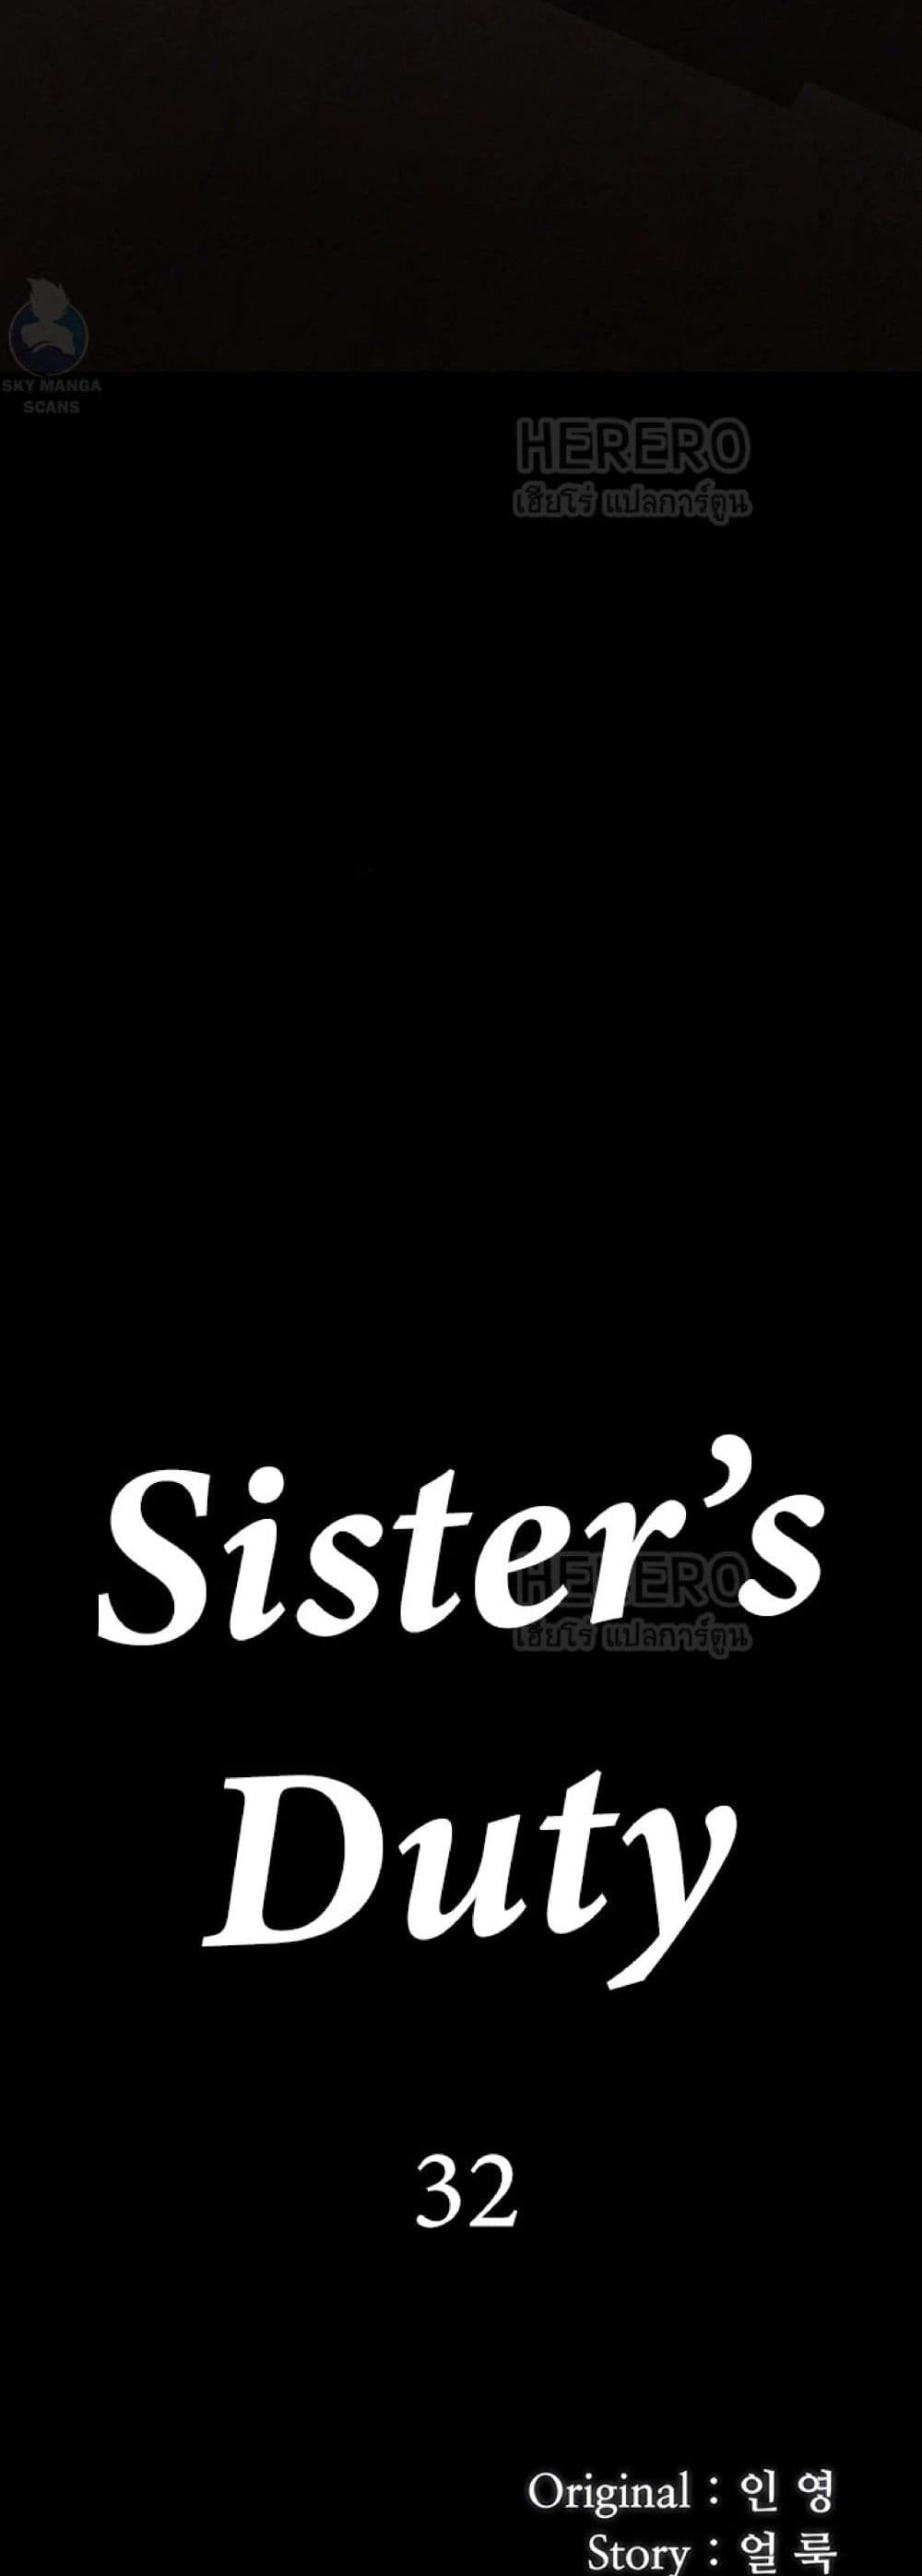 Sister's Duty 32 (5)